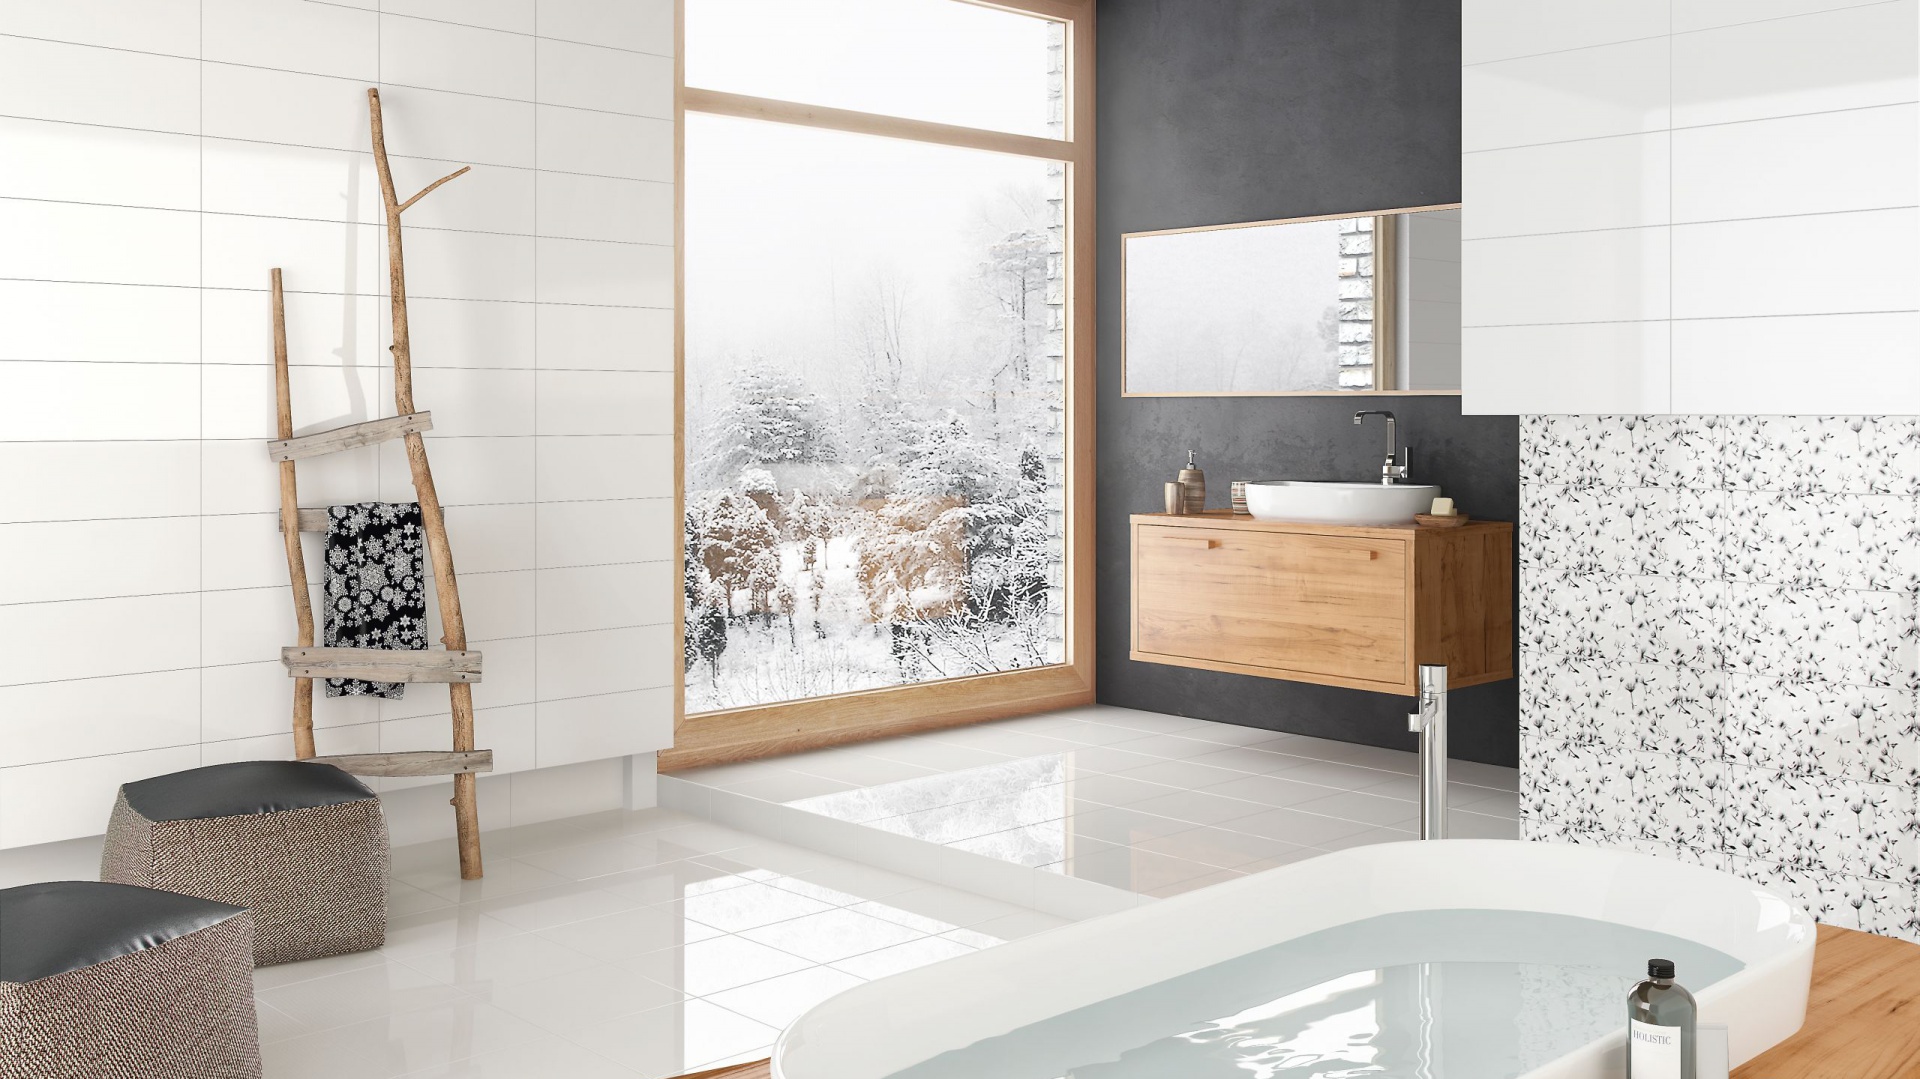 Łazienka inspirowana zimą – wnętrza z klimatem